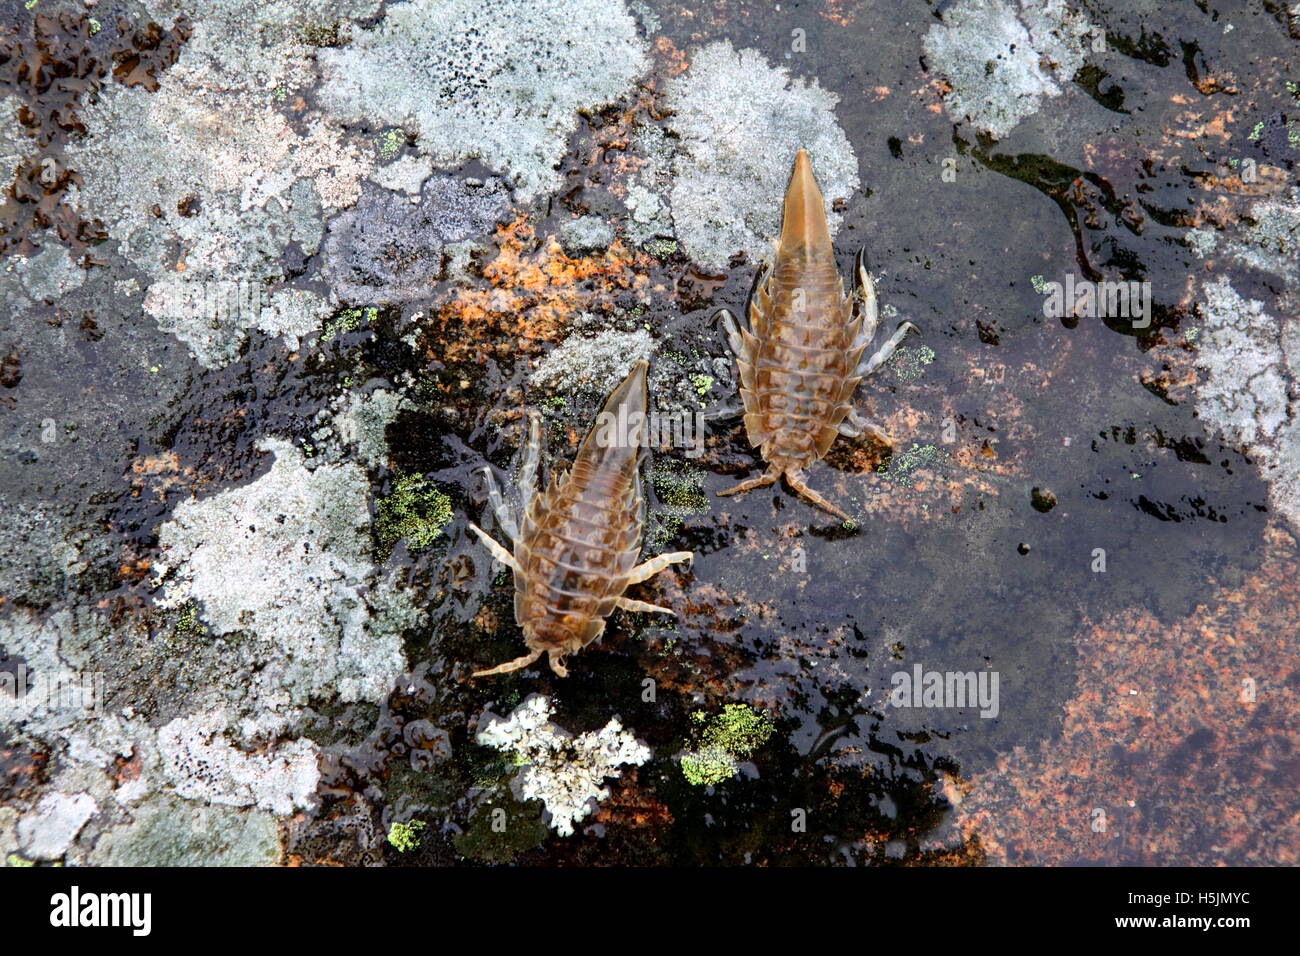 Isopods, Saduria entomon,  from the Baltic Sea Stock Photo